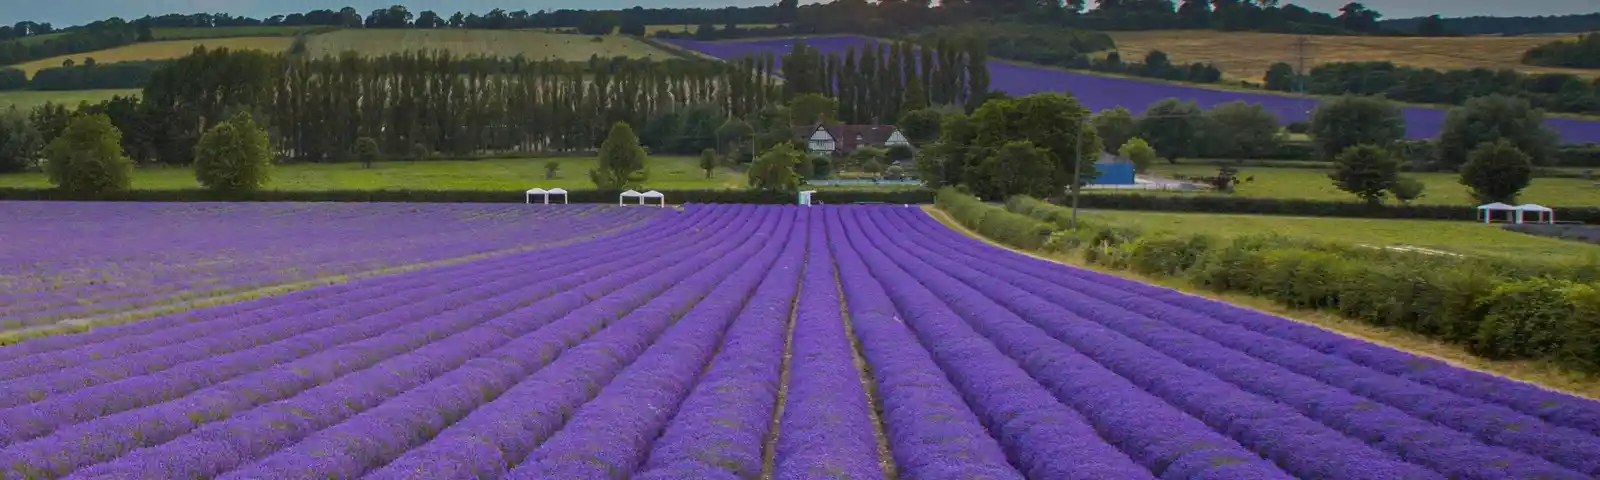 Castle Farm Lavender image2.jpg